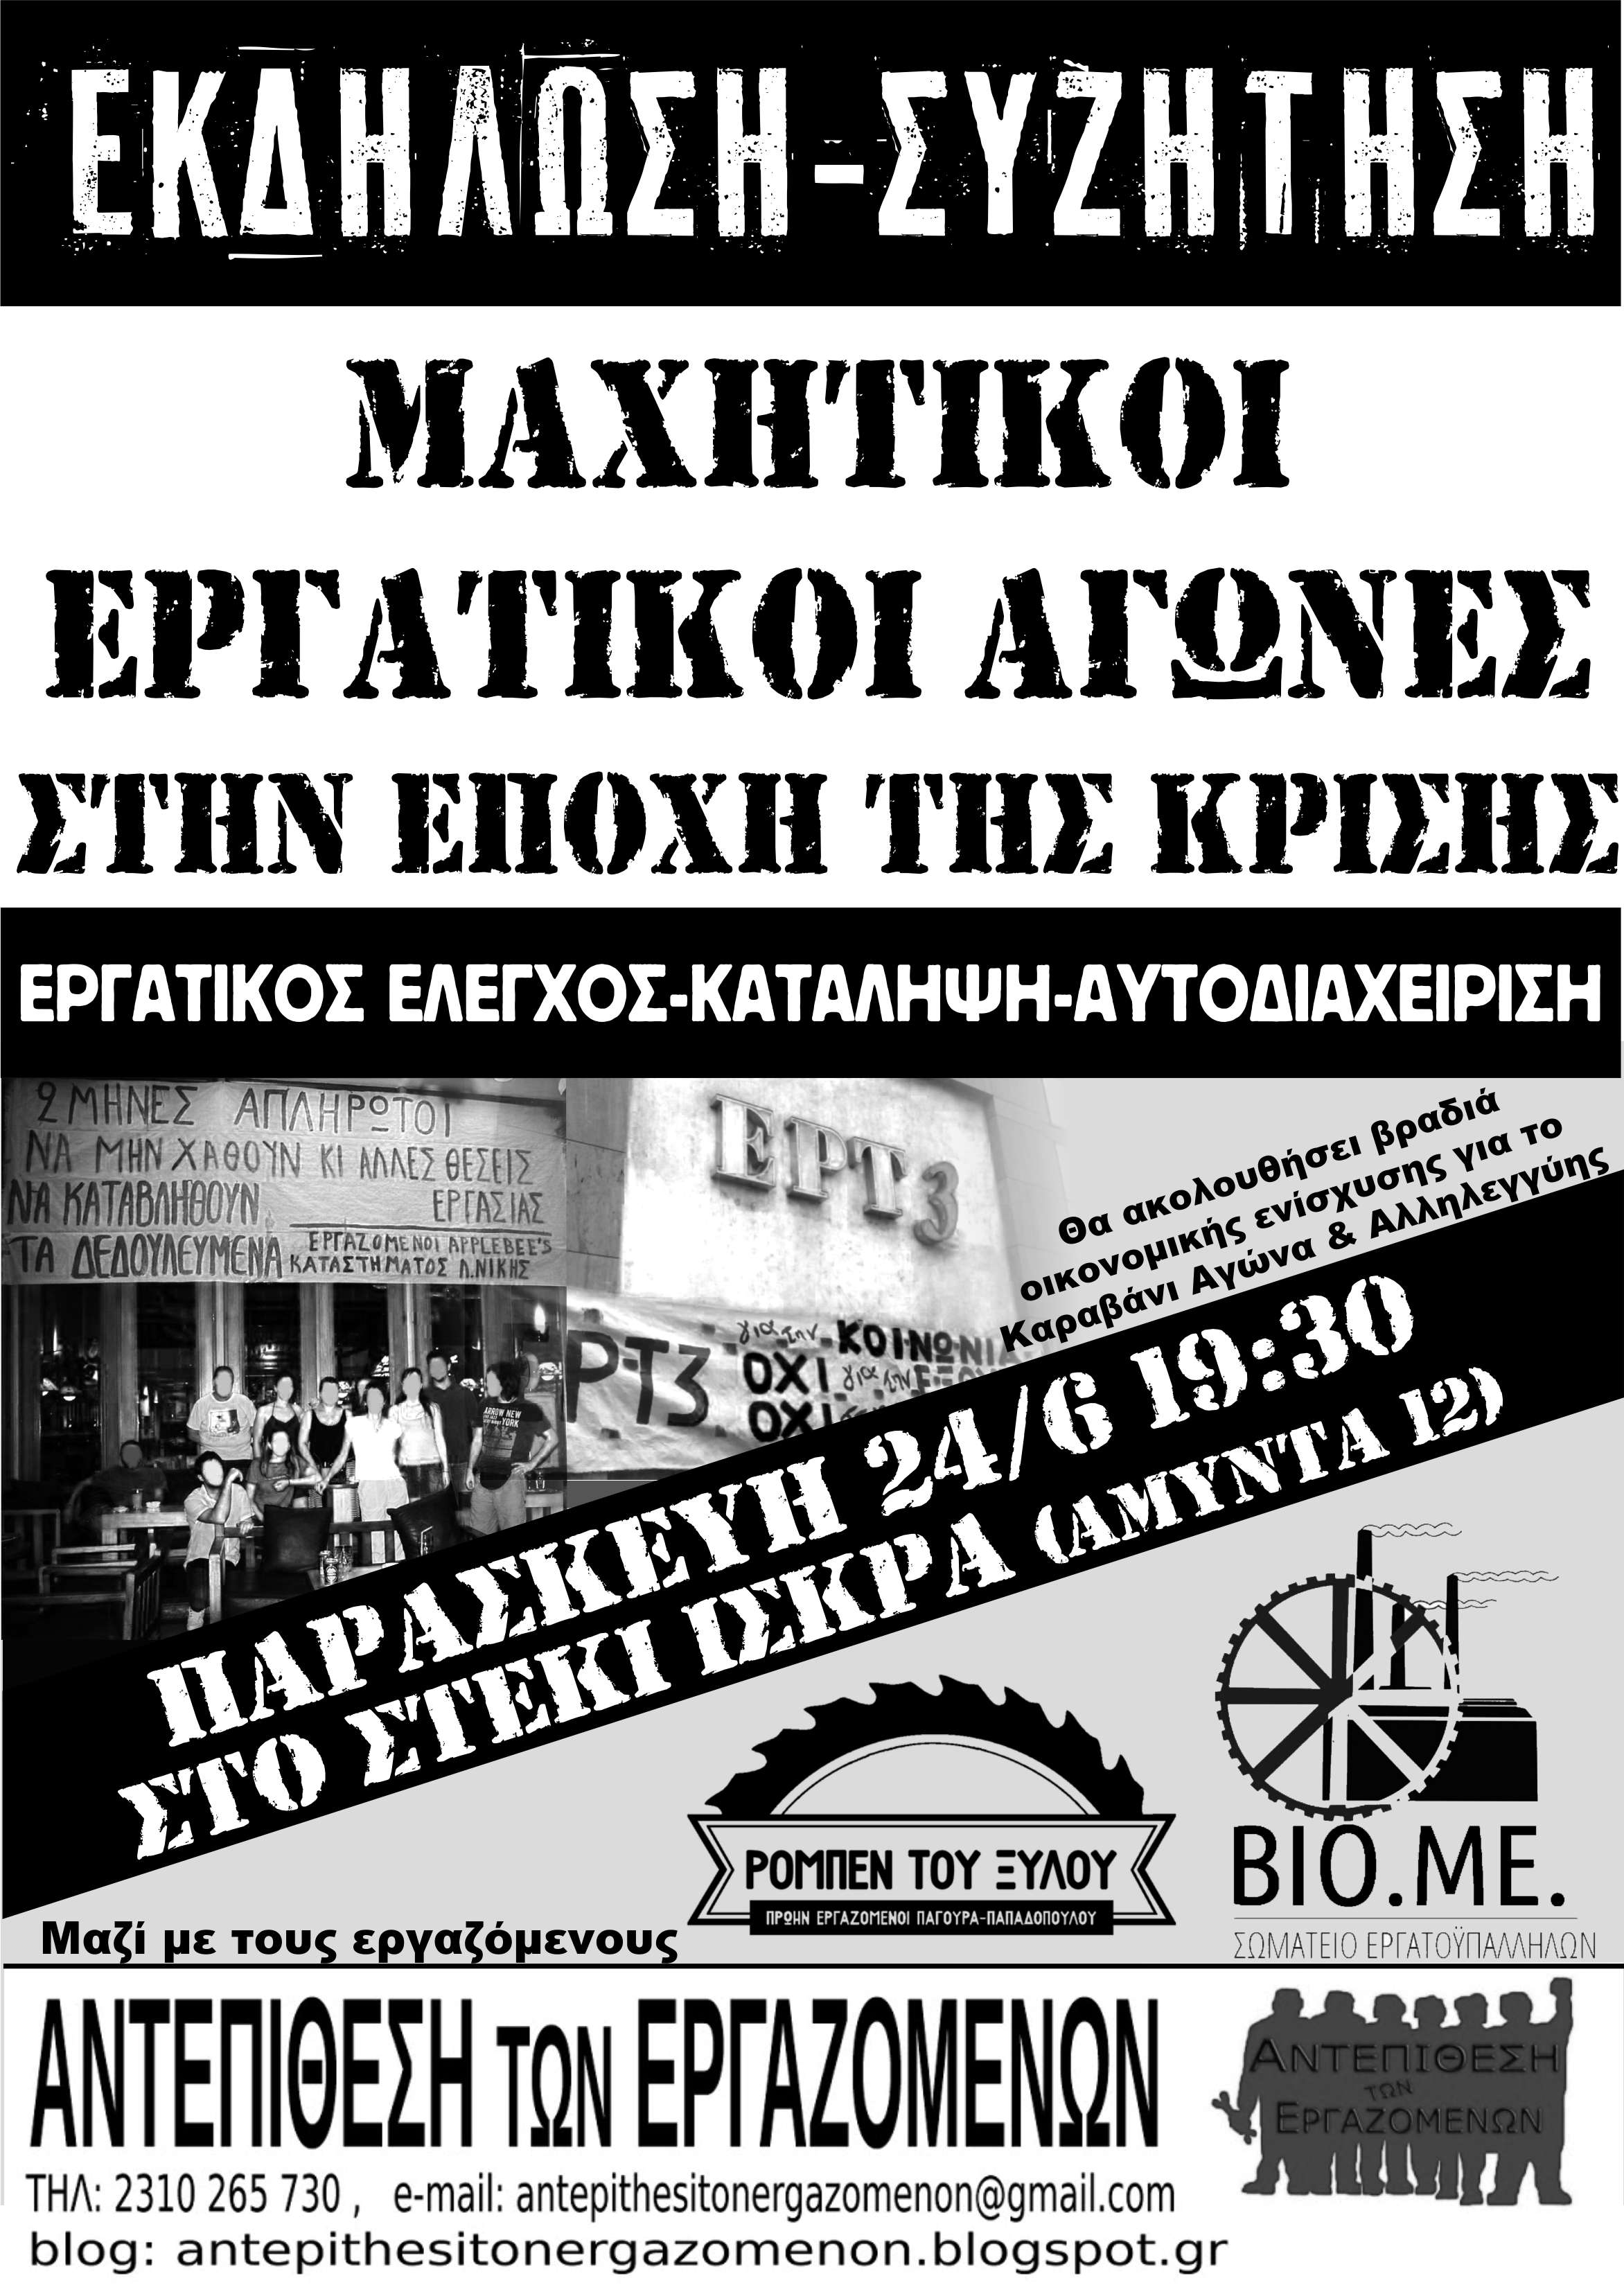 Θεσσαλονίκη 24/6: Εκδήλωση της Αντεπίθεσης των Εργαζομένων: “Μαχητικοί εργατικοί αγώνες. Εργατικός έλεγχος – Κατάληψη – Αυτοδιαχείριση”